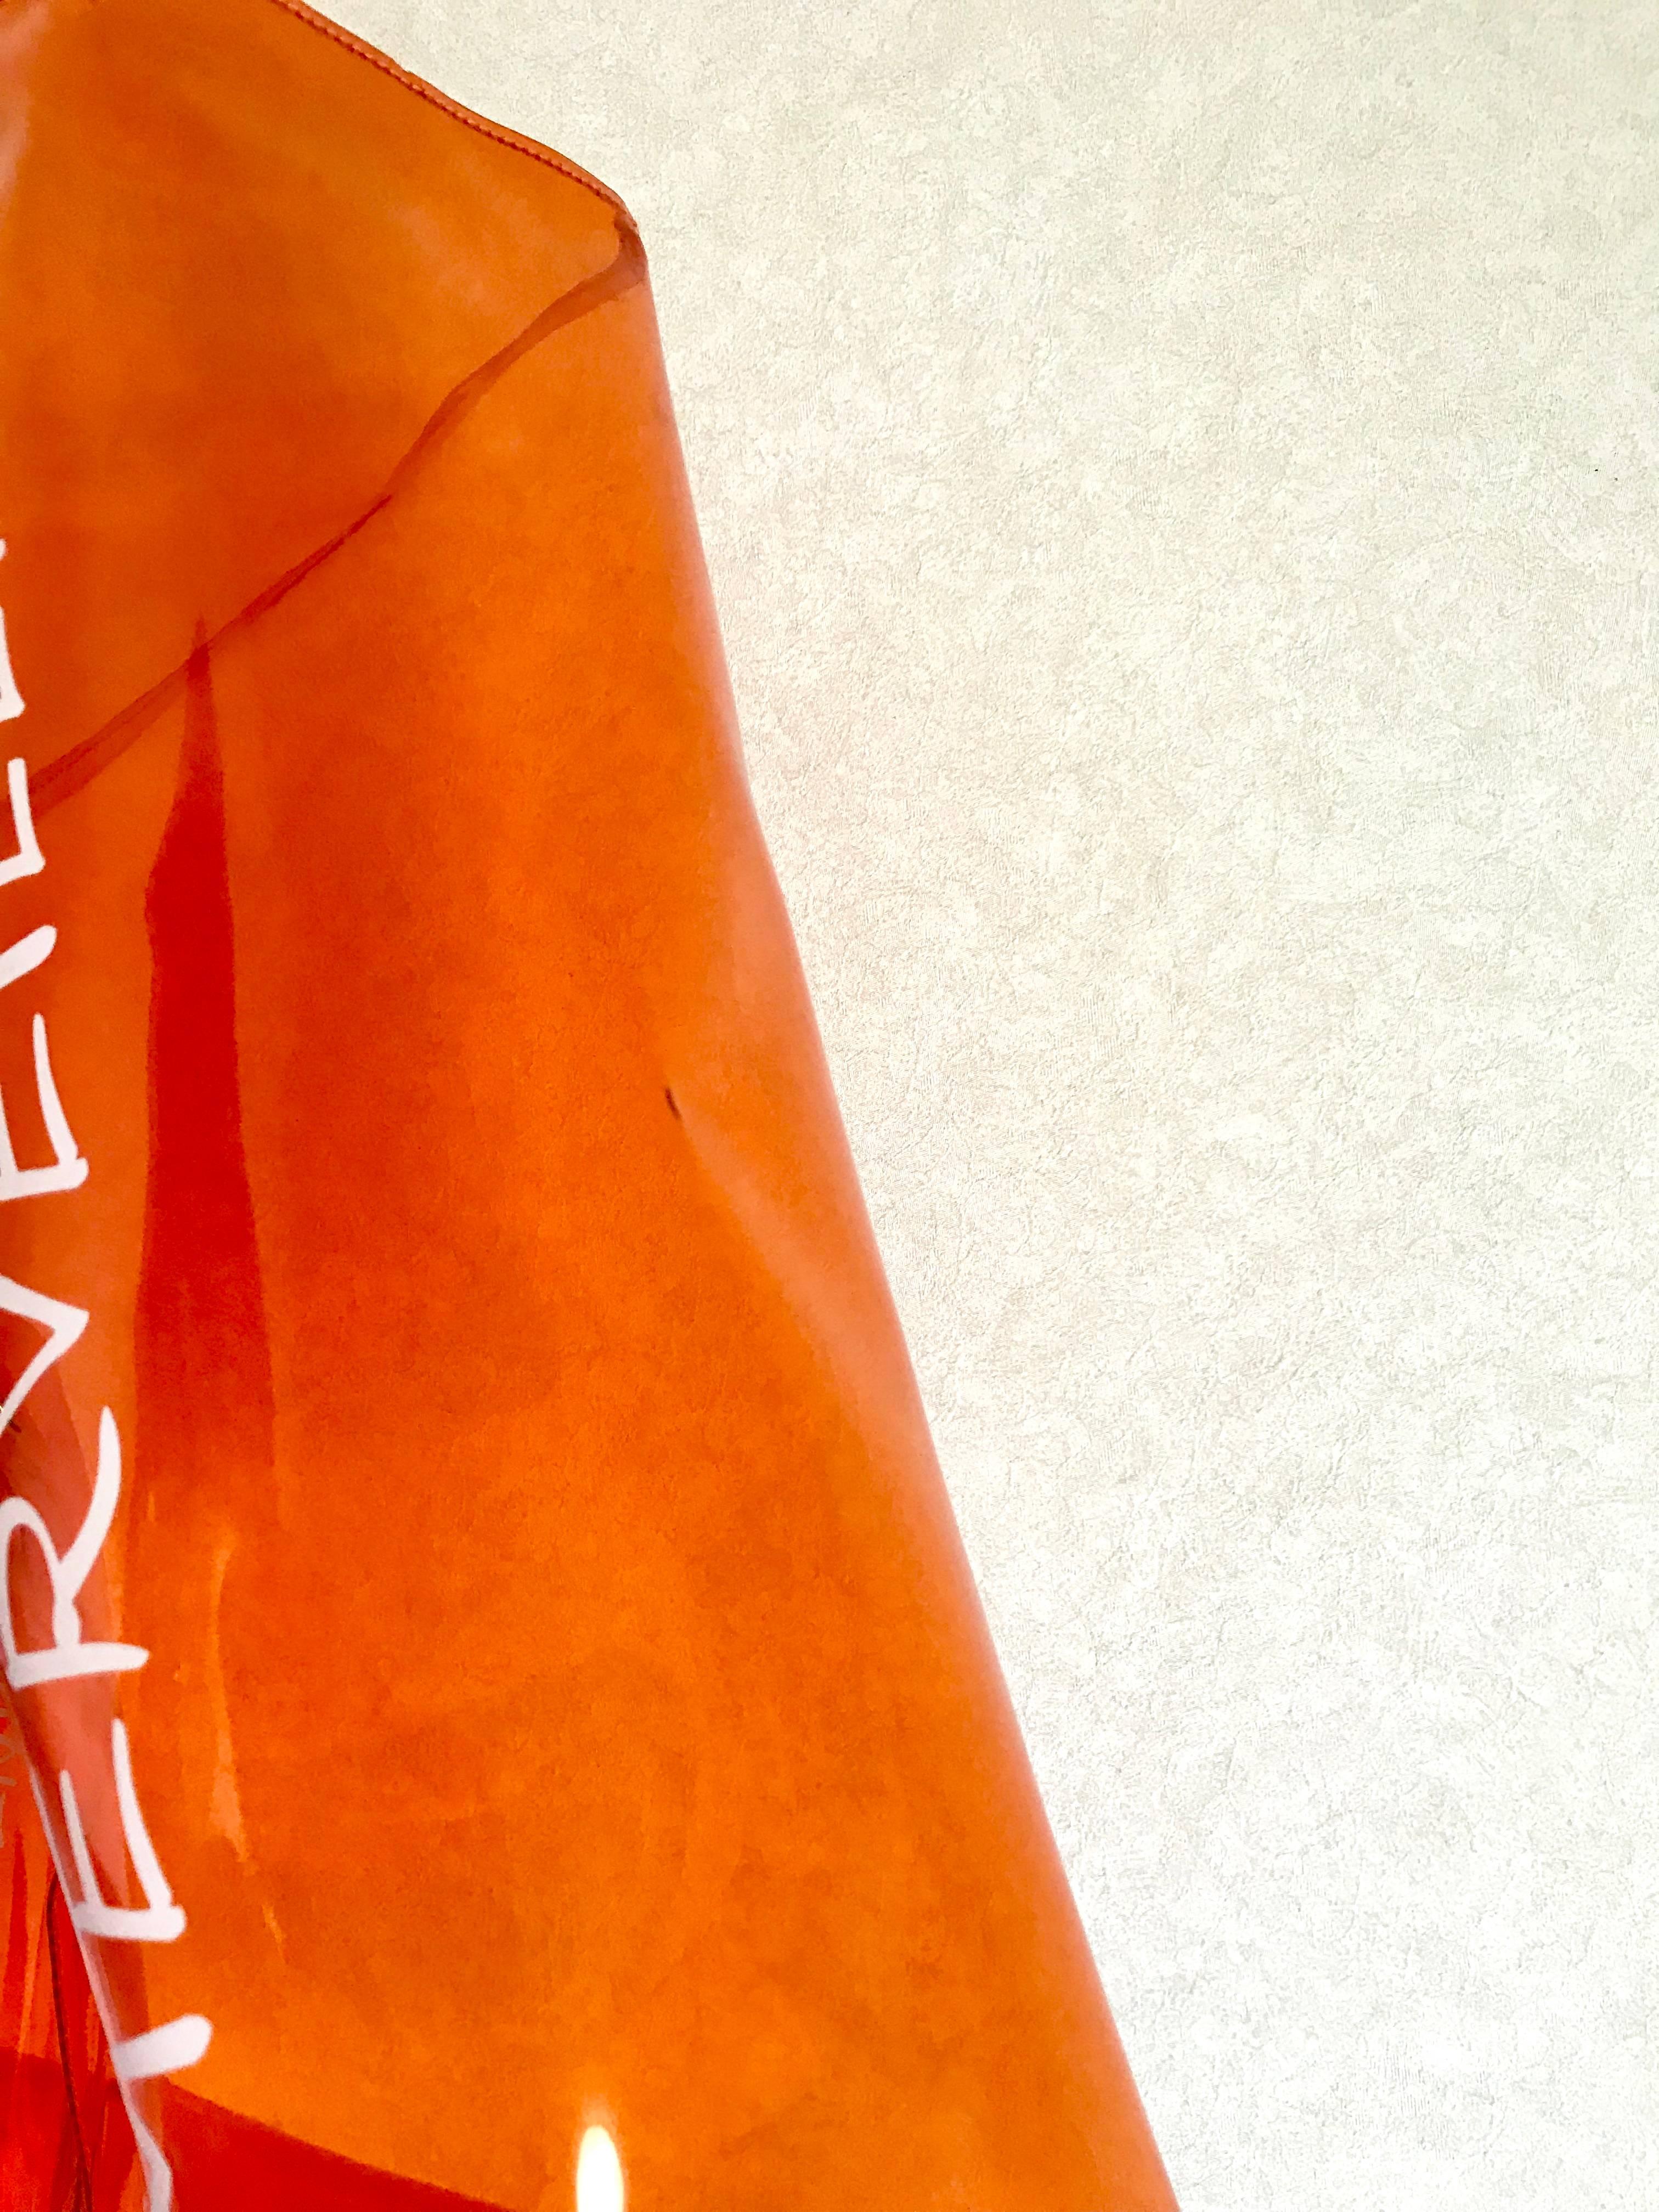 Red Vintage Hermes rare transparent orange vinyl Kelly bag Japan Limited Edition.